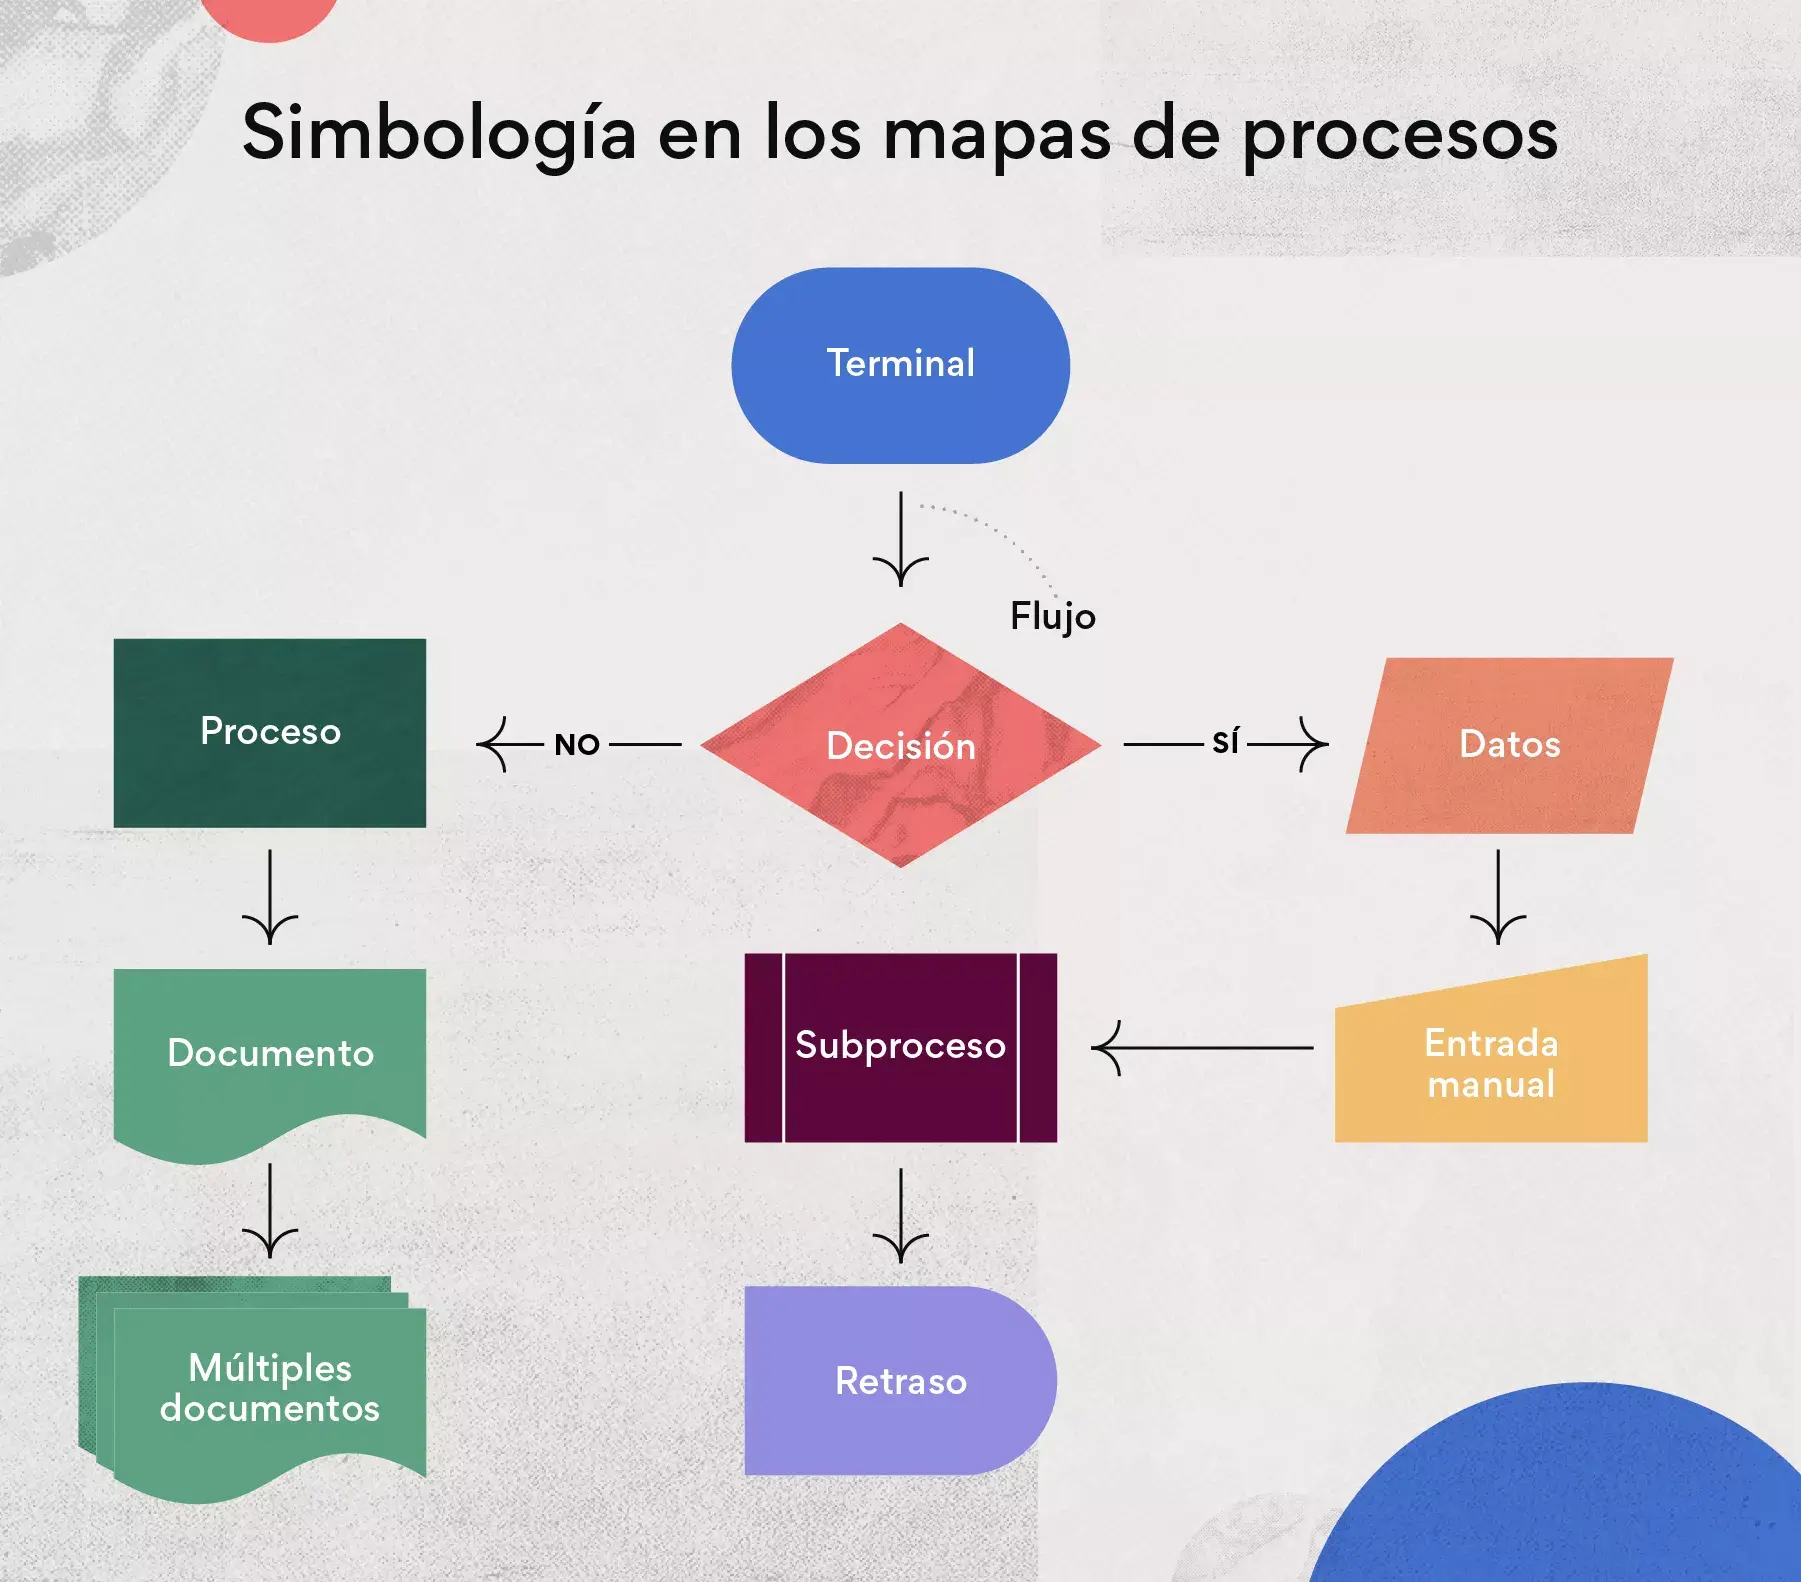 Simbología en los mapas de procesos